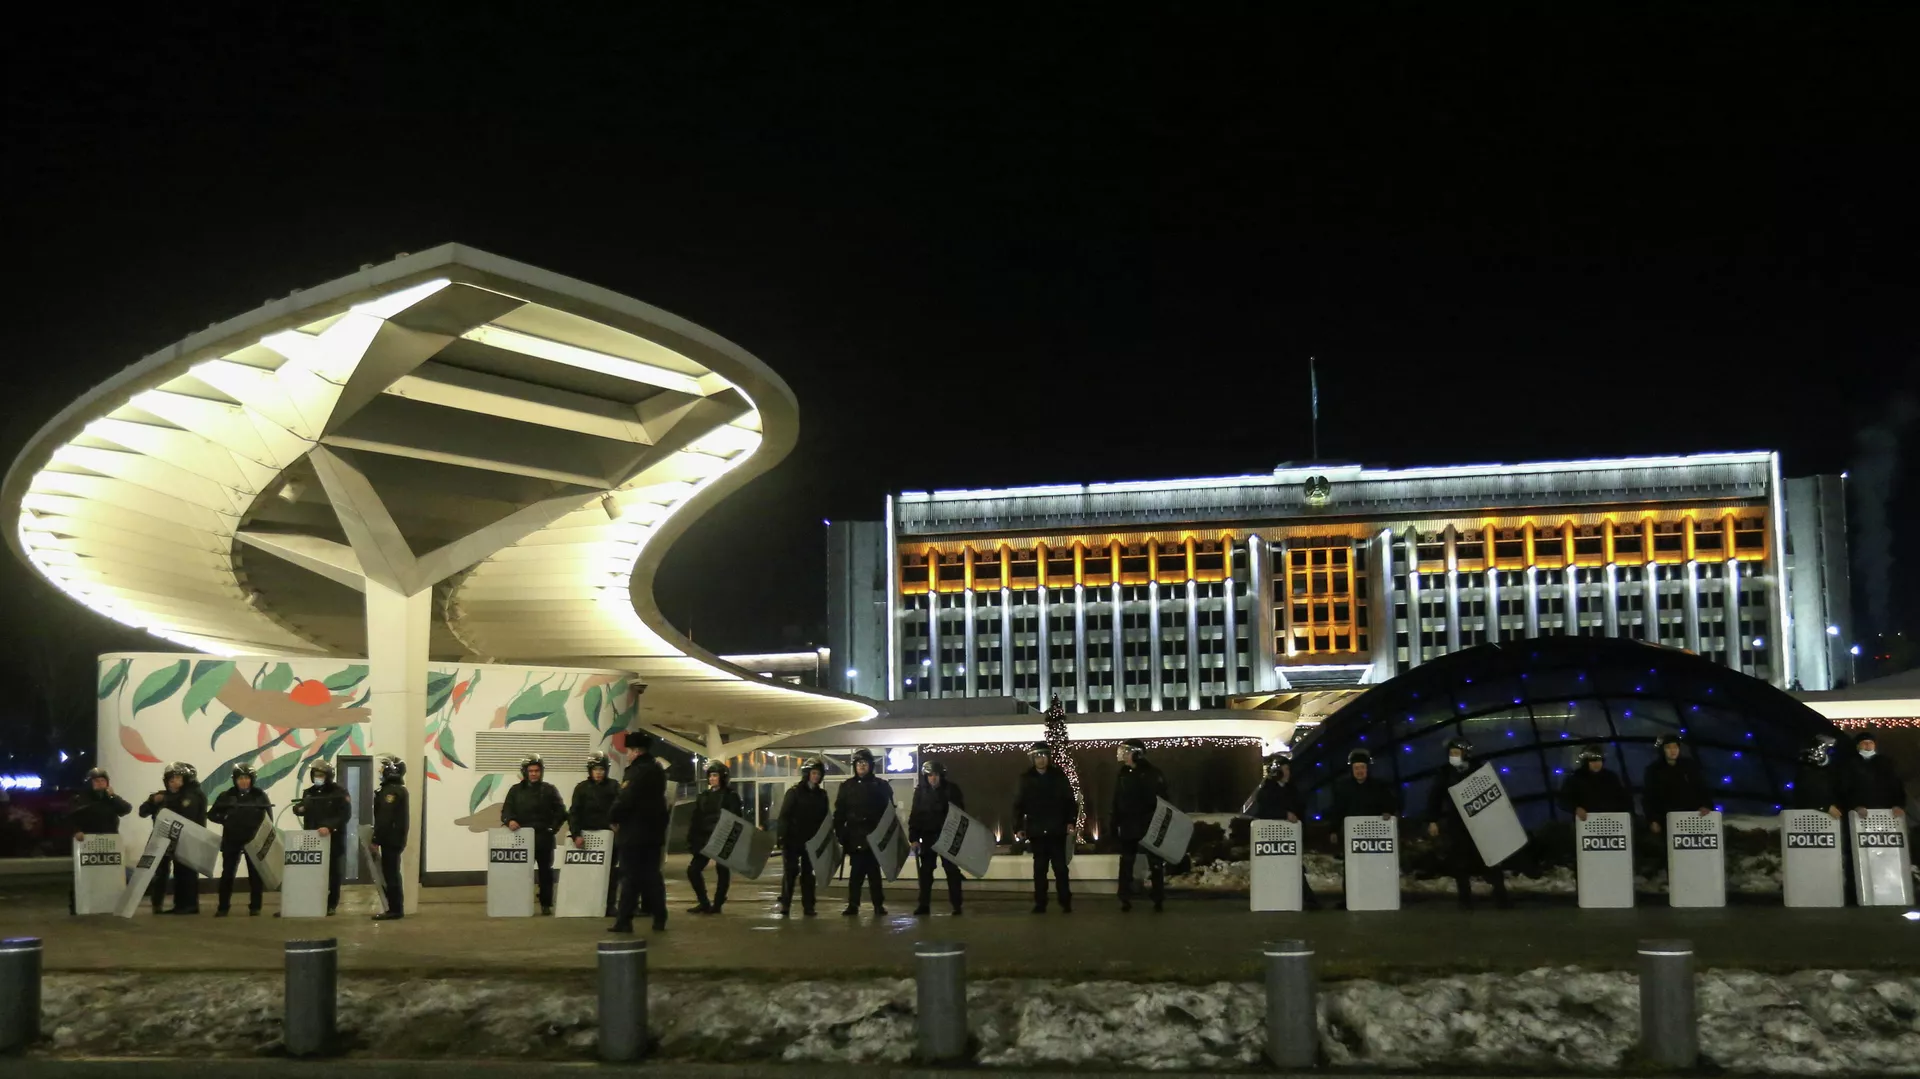 Алматы акимчилиги менен Nur Otan партиясынын имаратынан кара түтүн чыгып жатат